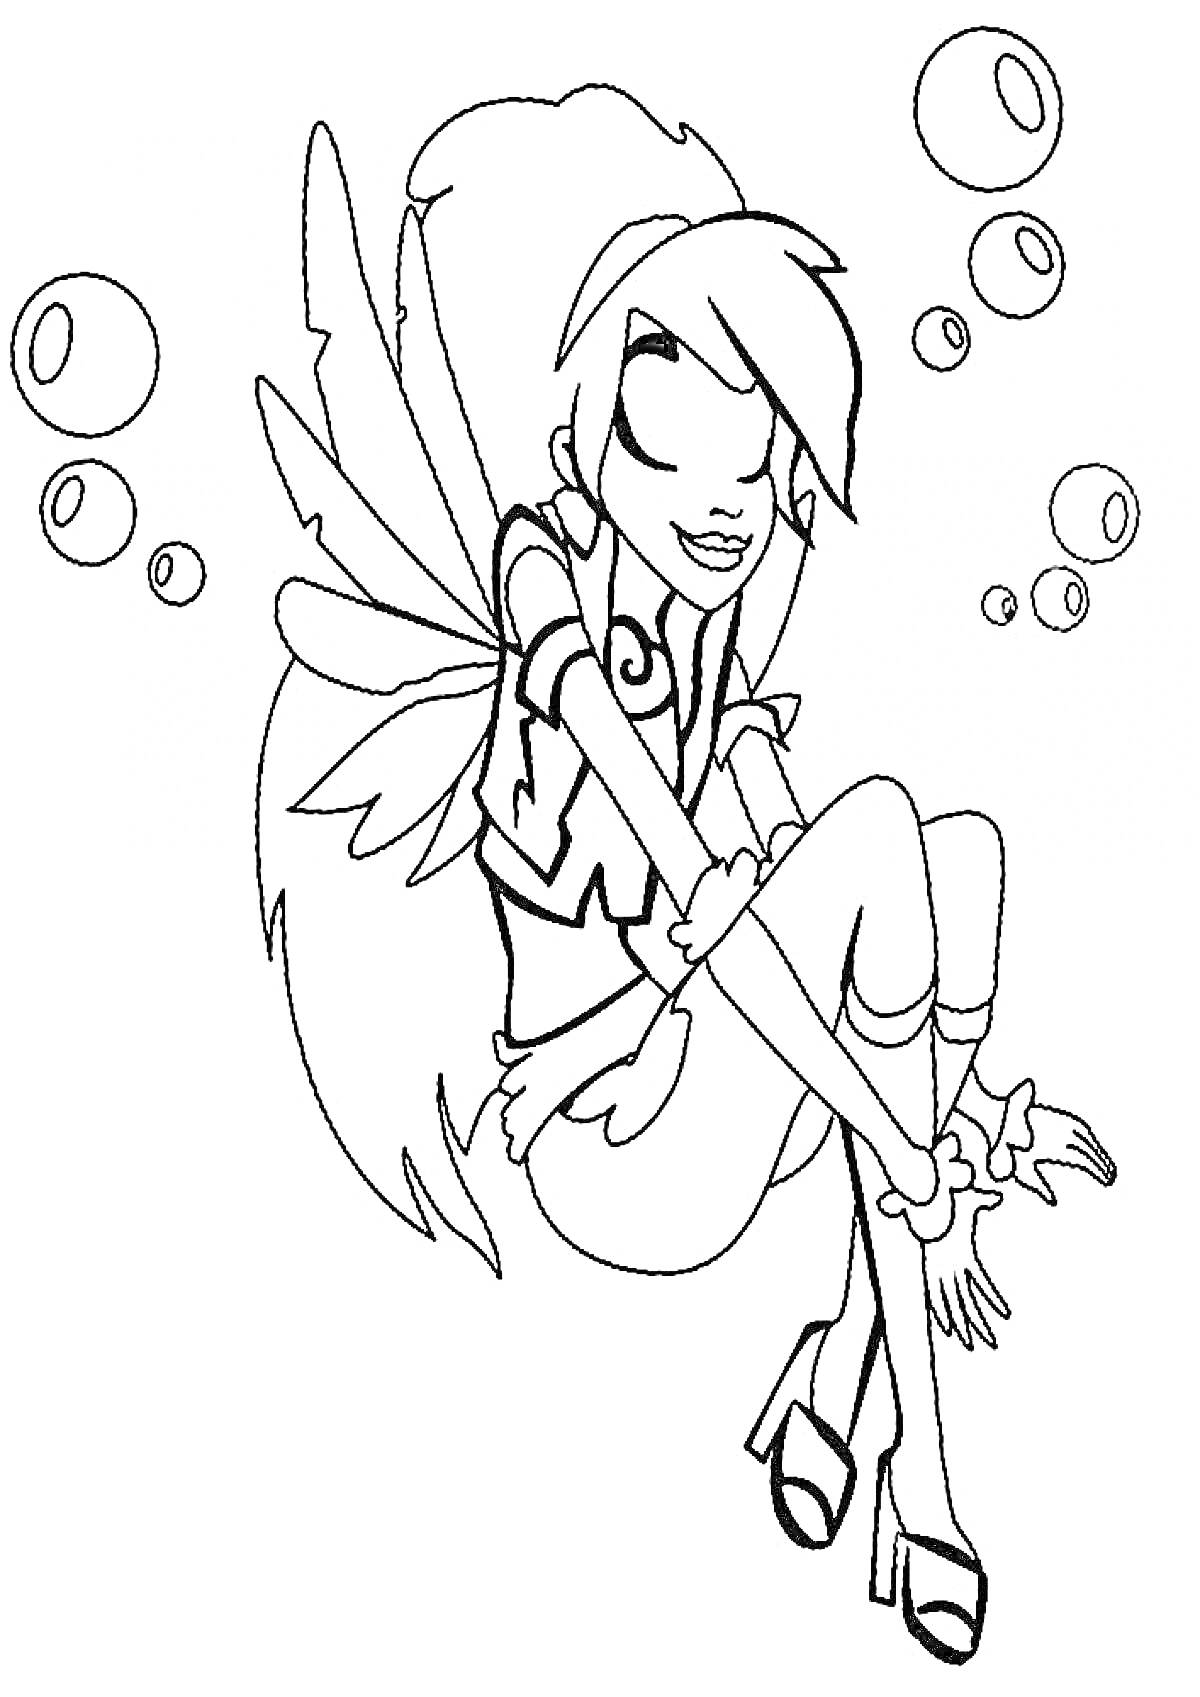 Девушка с крыльями, сидящая на корточках и окруженная пузырьками